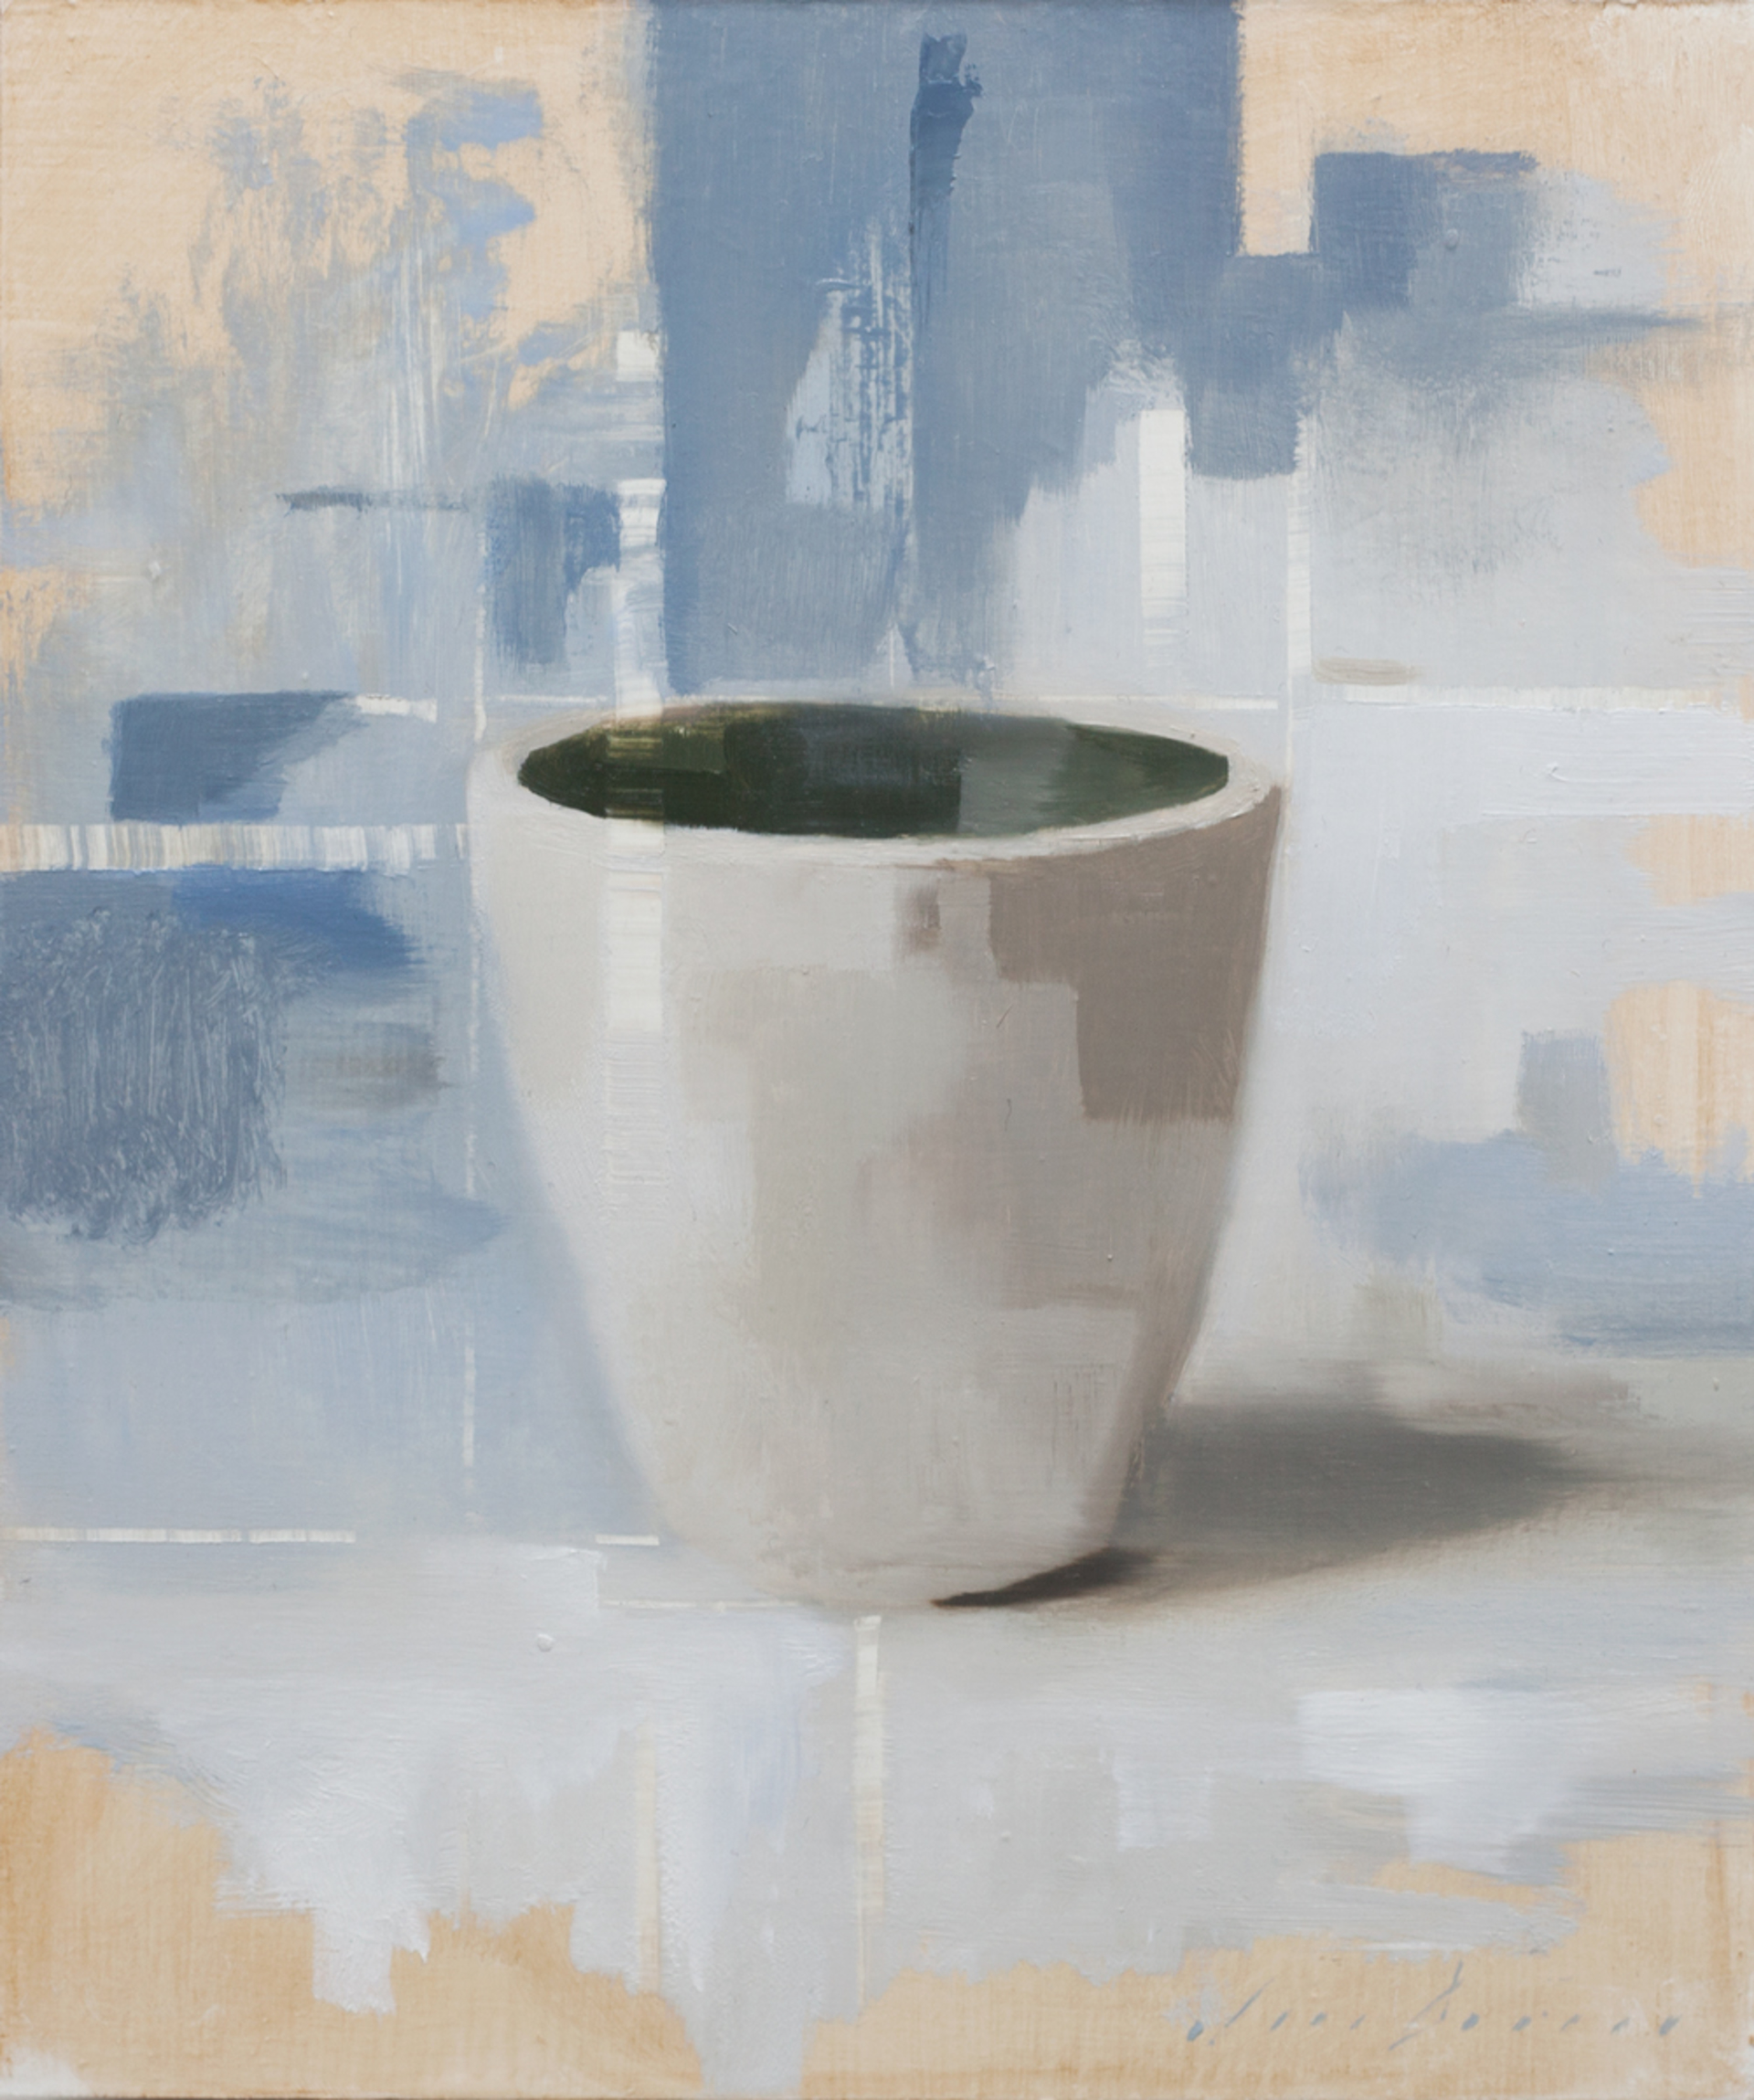 Handmade Cup 2 by Jon Doran